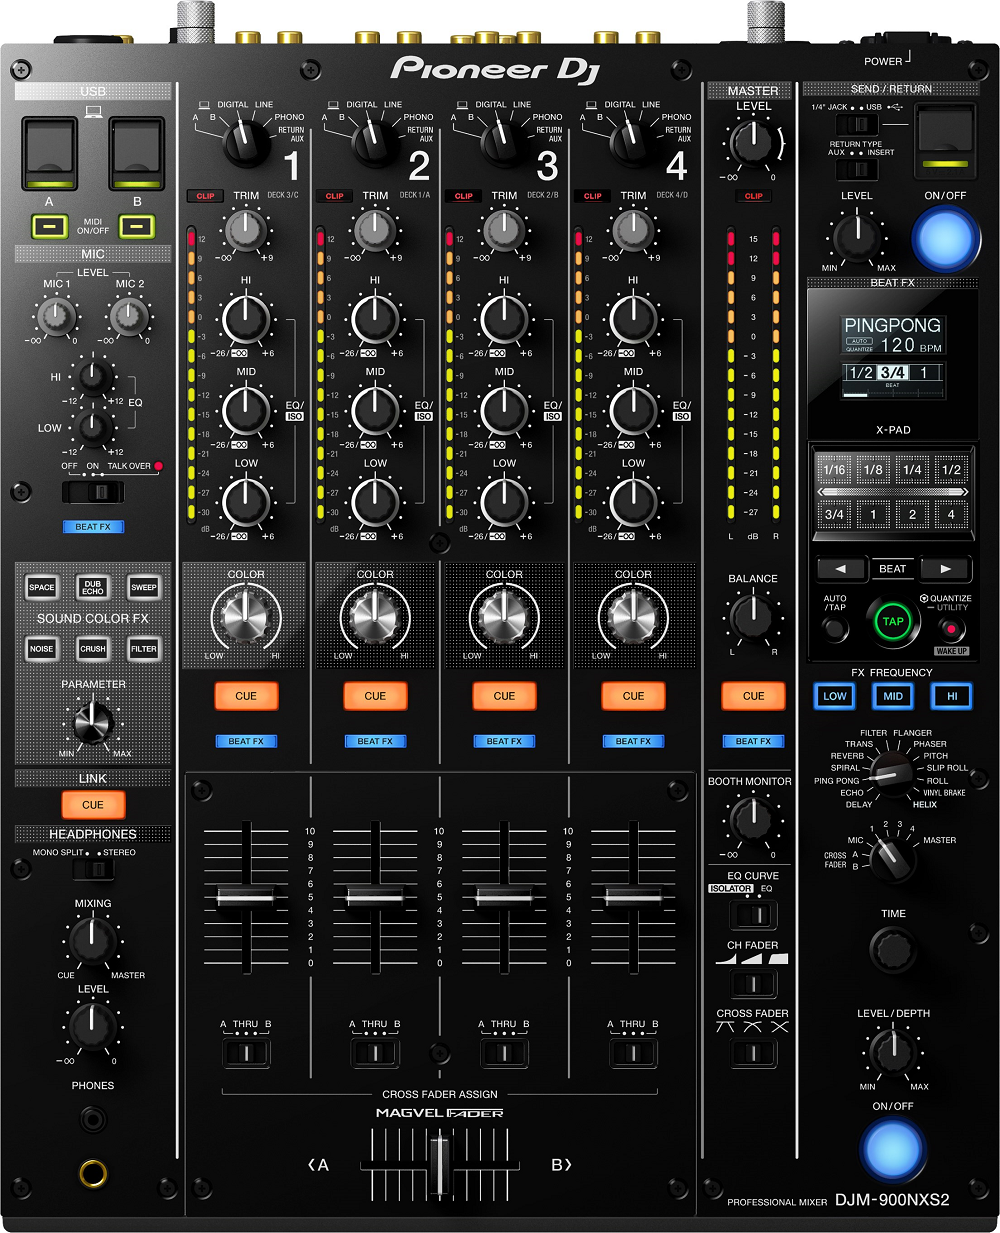 Pioneer Dj Djm-900nxs2 - Mixer DJ - Main picture